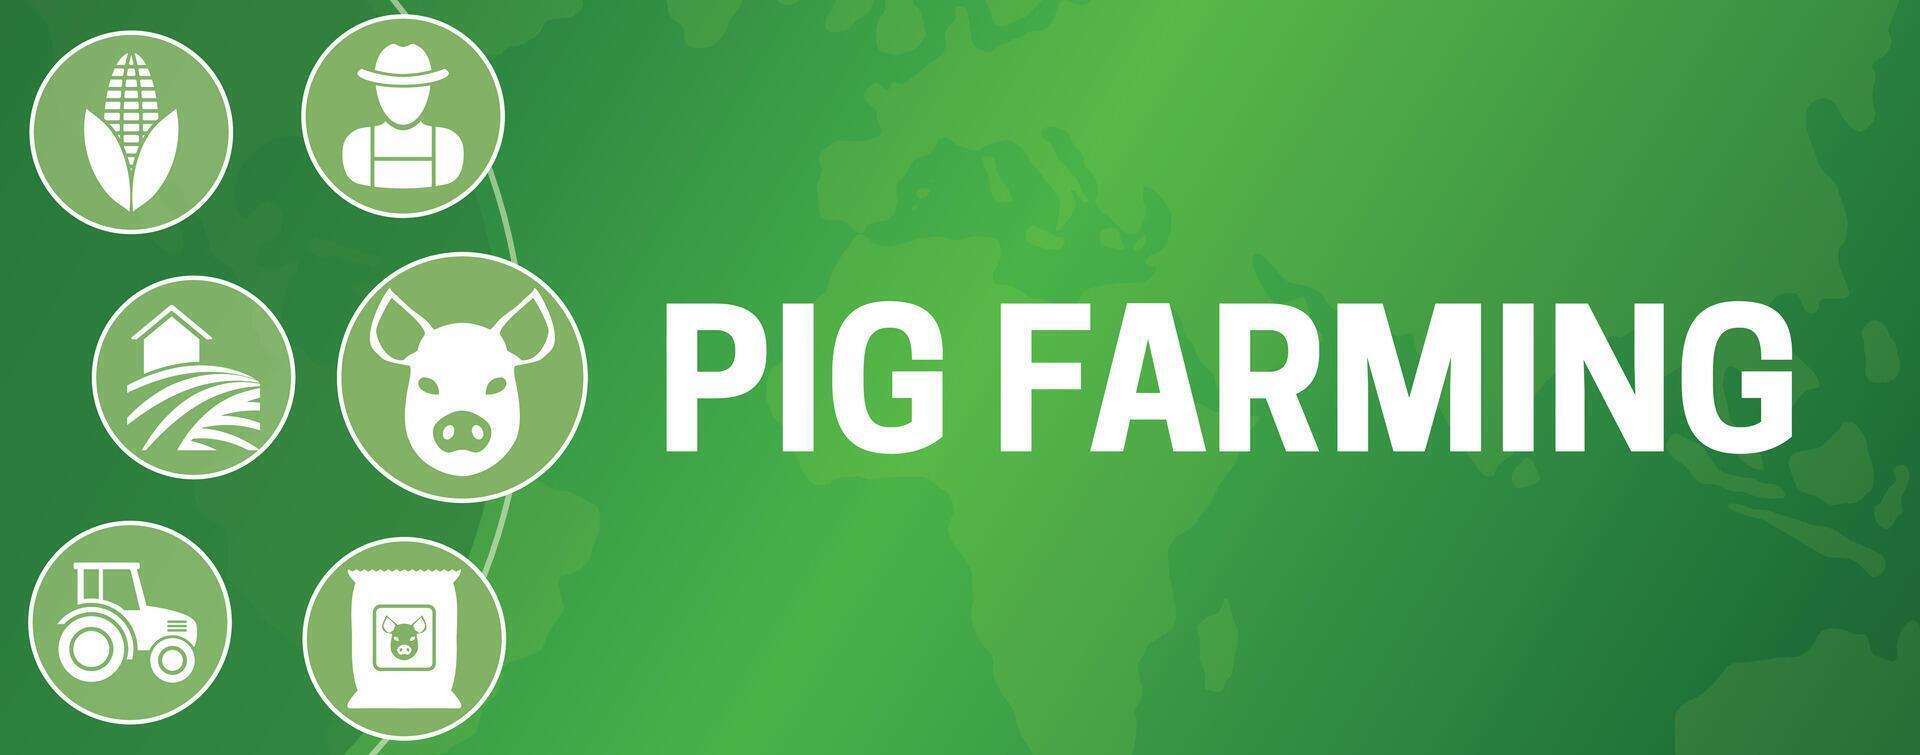 porc agriculture illustration bannière vecteur